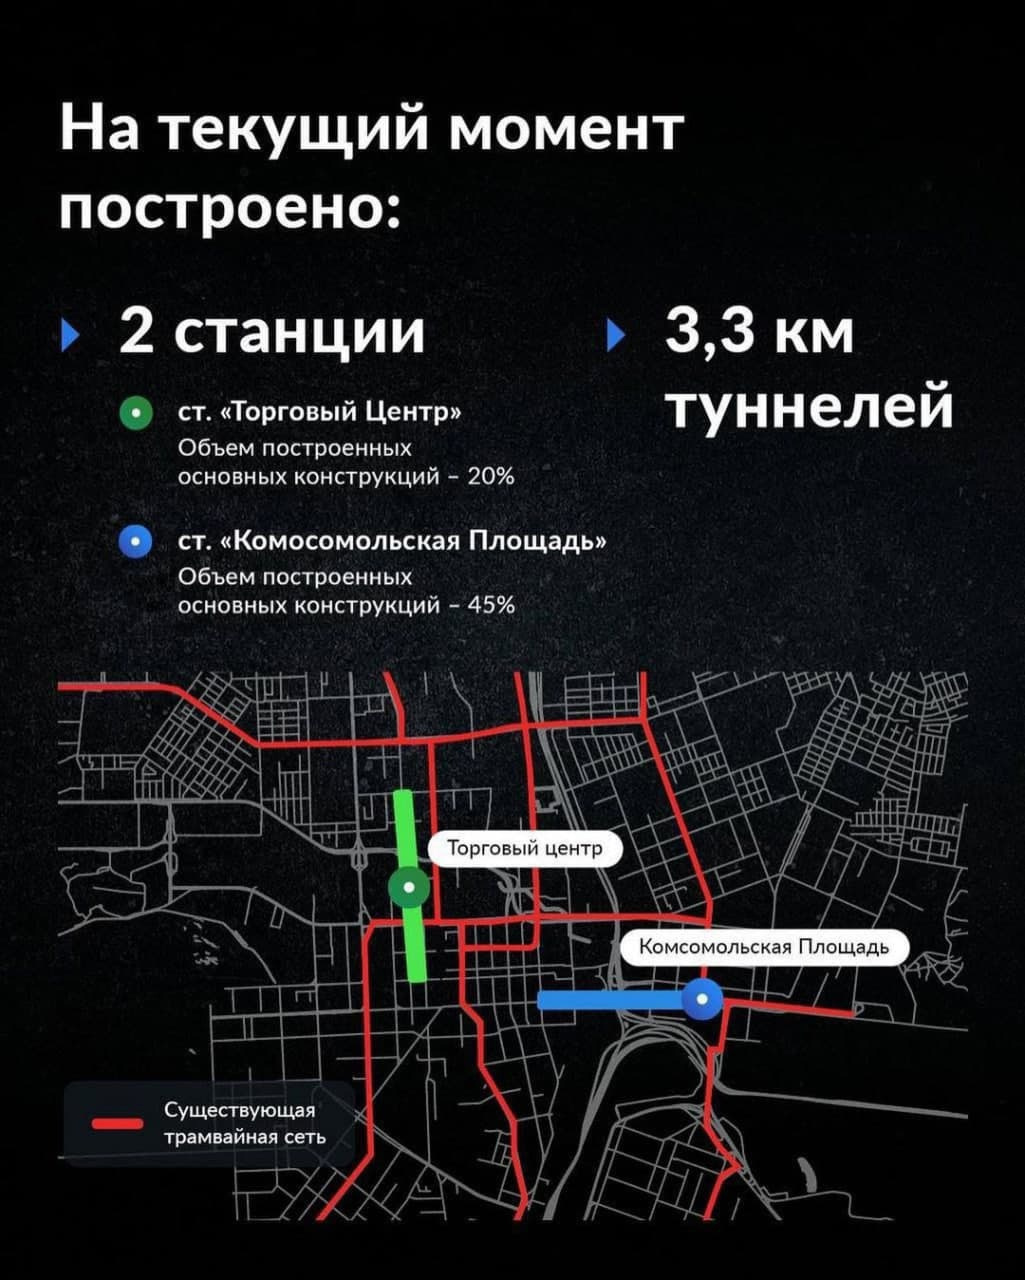 Оси координат челябинскому метротраму задают две недостроенные ветки метро в районе Торгового центра и Комсомольской площади